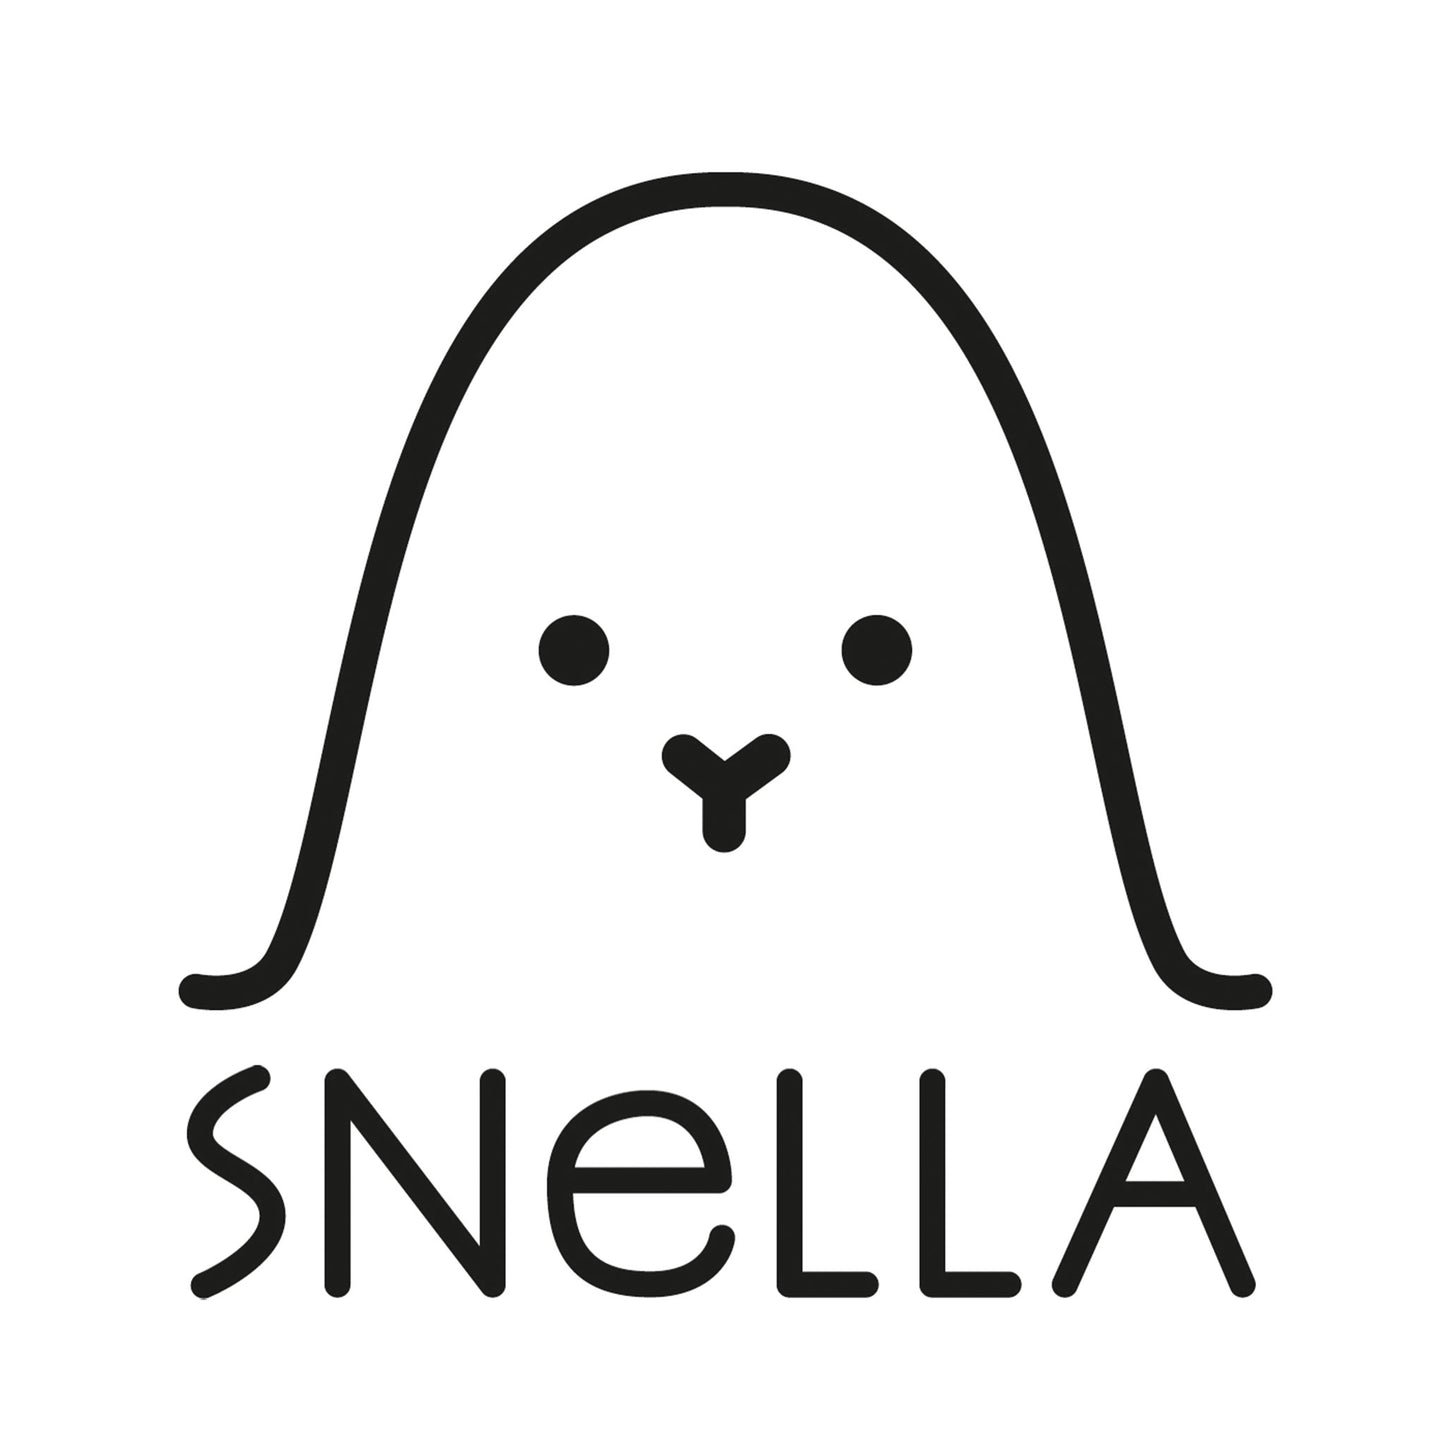 Snella logo in black and white